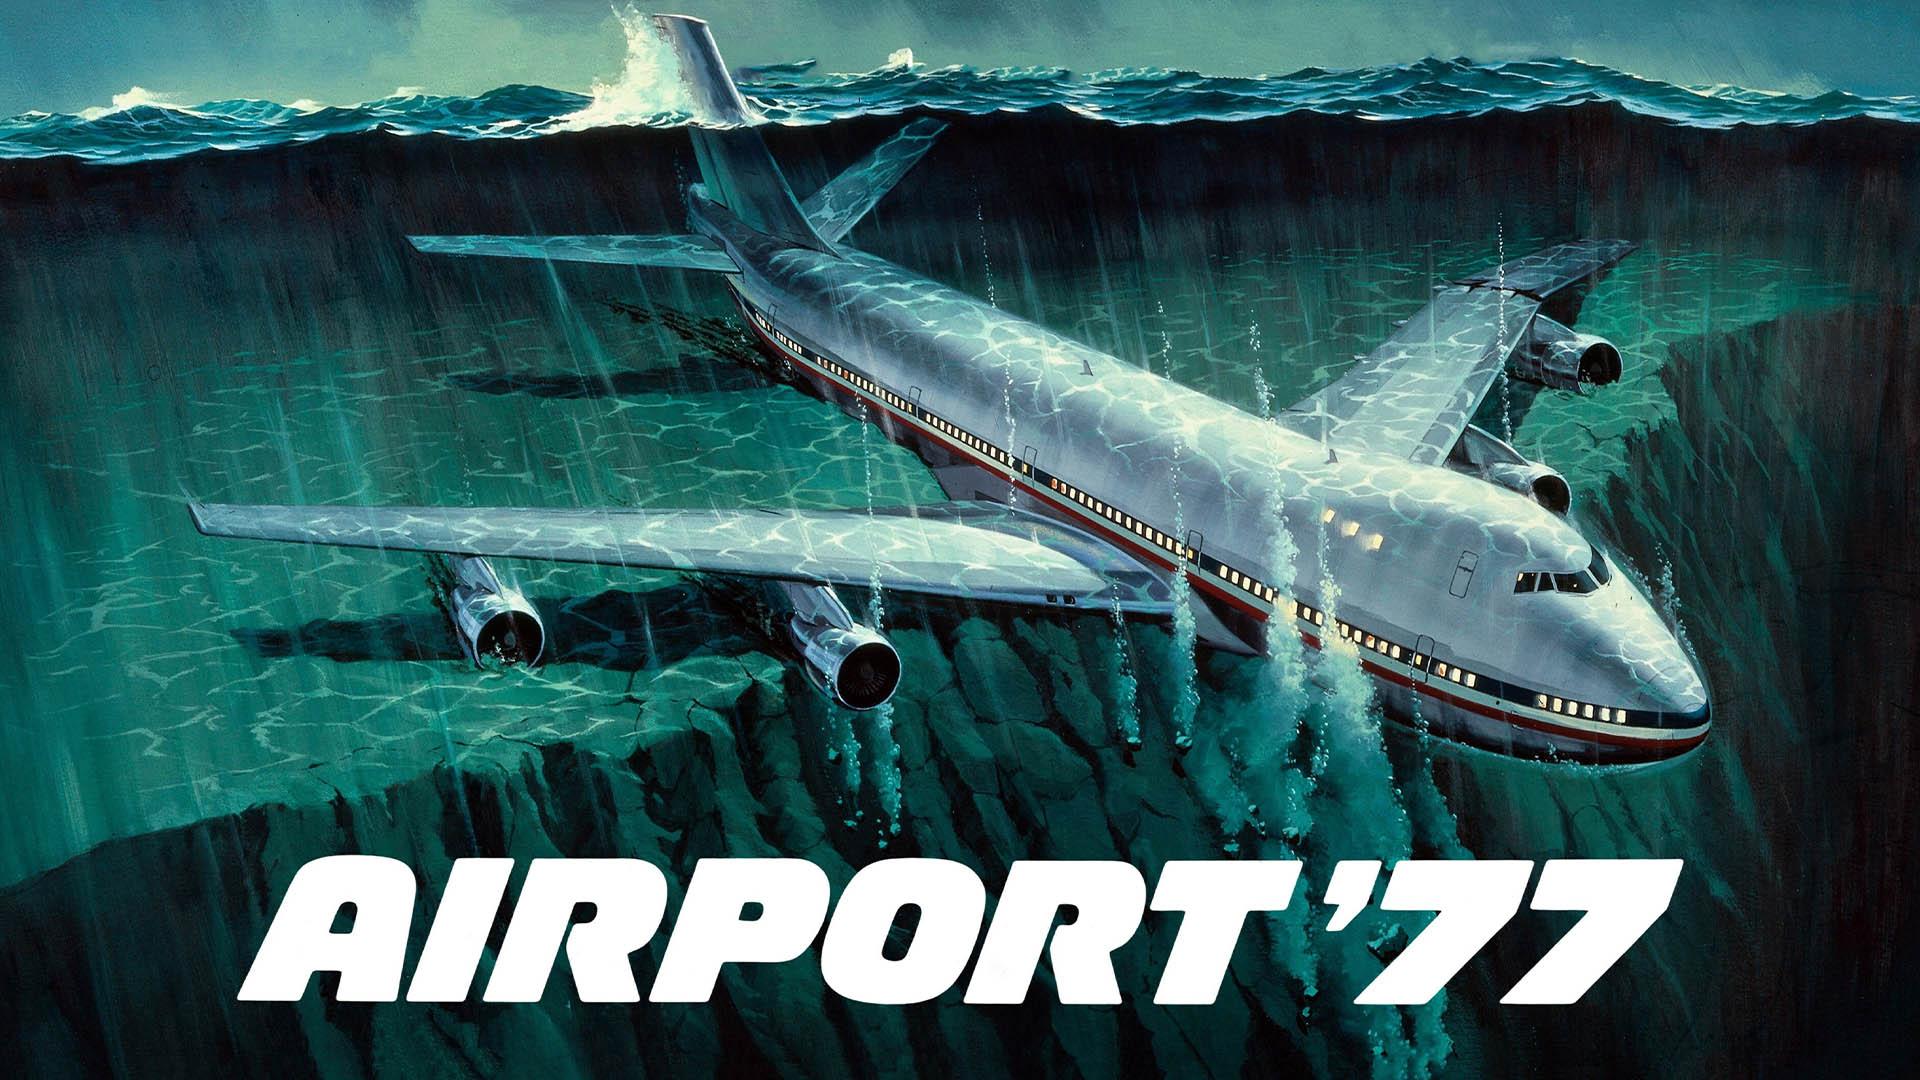 پوستر سینمایی فیلم Airport '77 و هواپیمایی در اعماق دریا